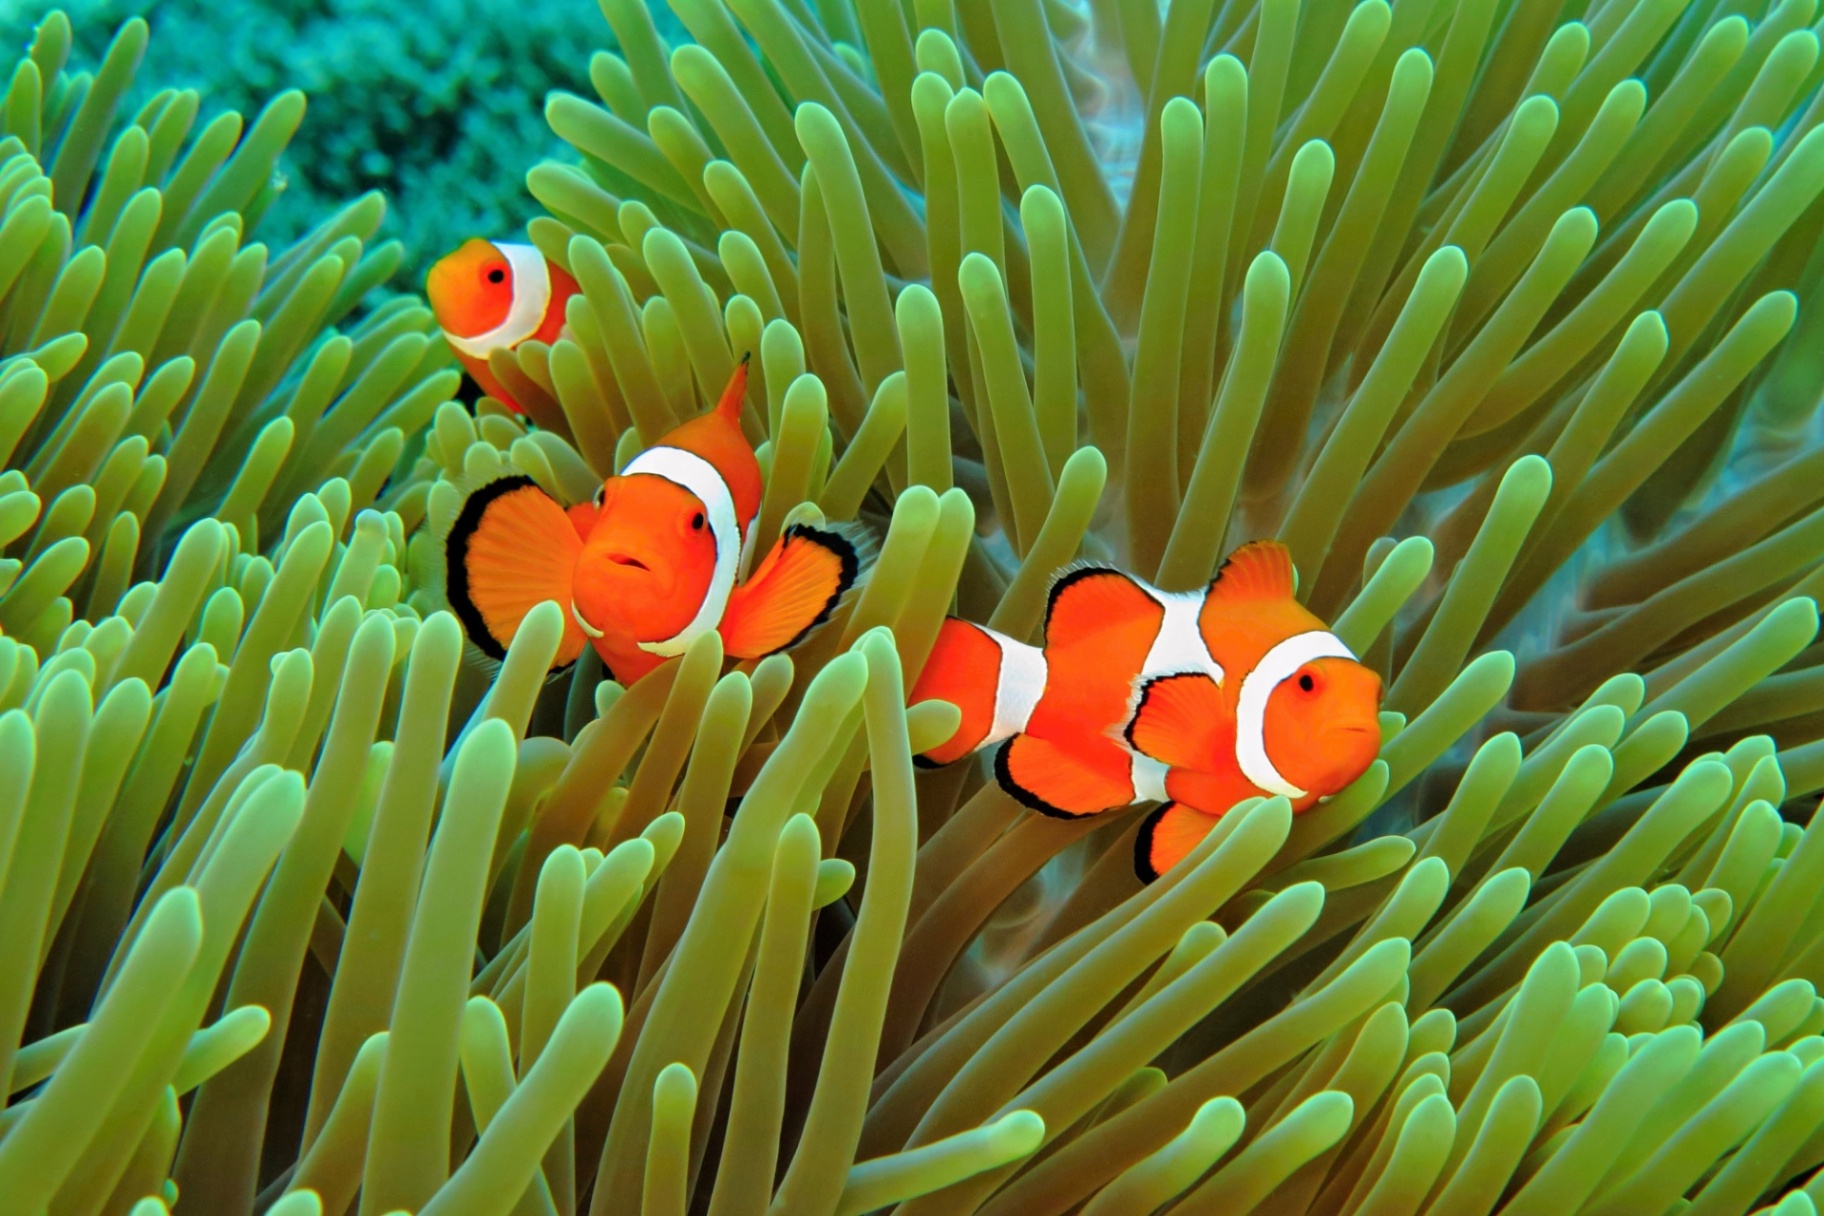 Saiba quais os animais marinhos mais perigosos do mundo